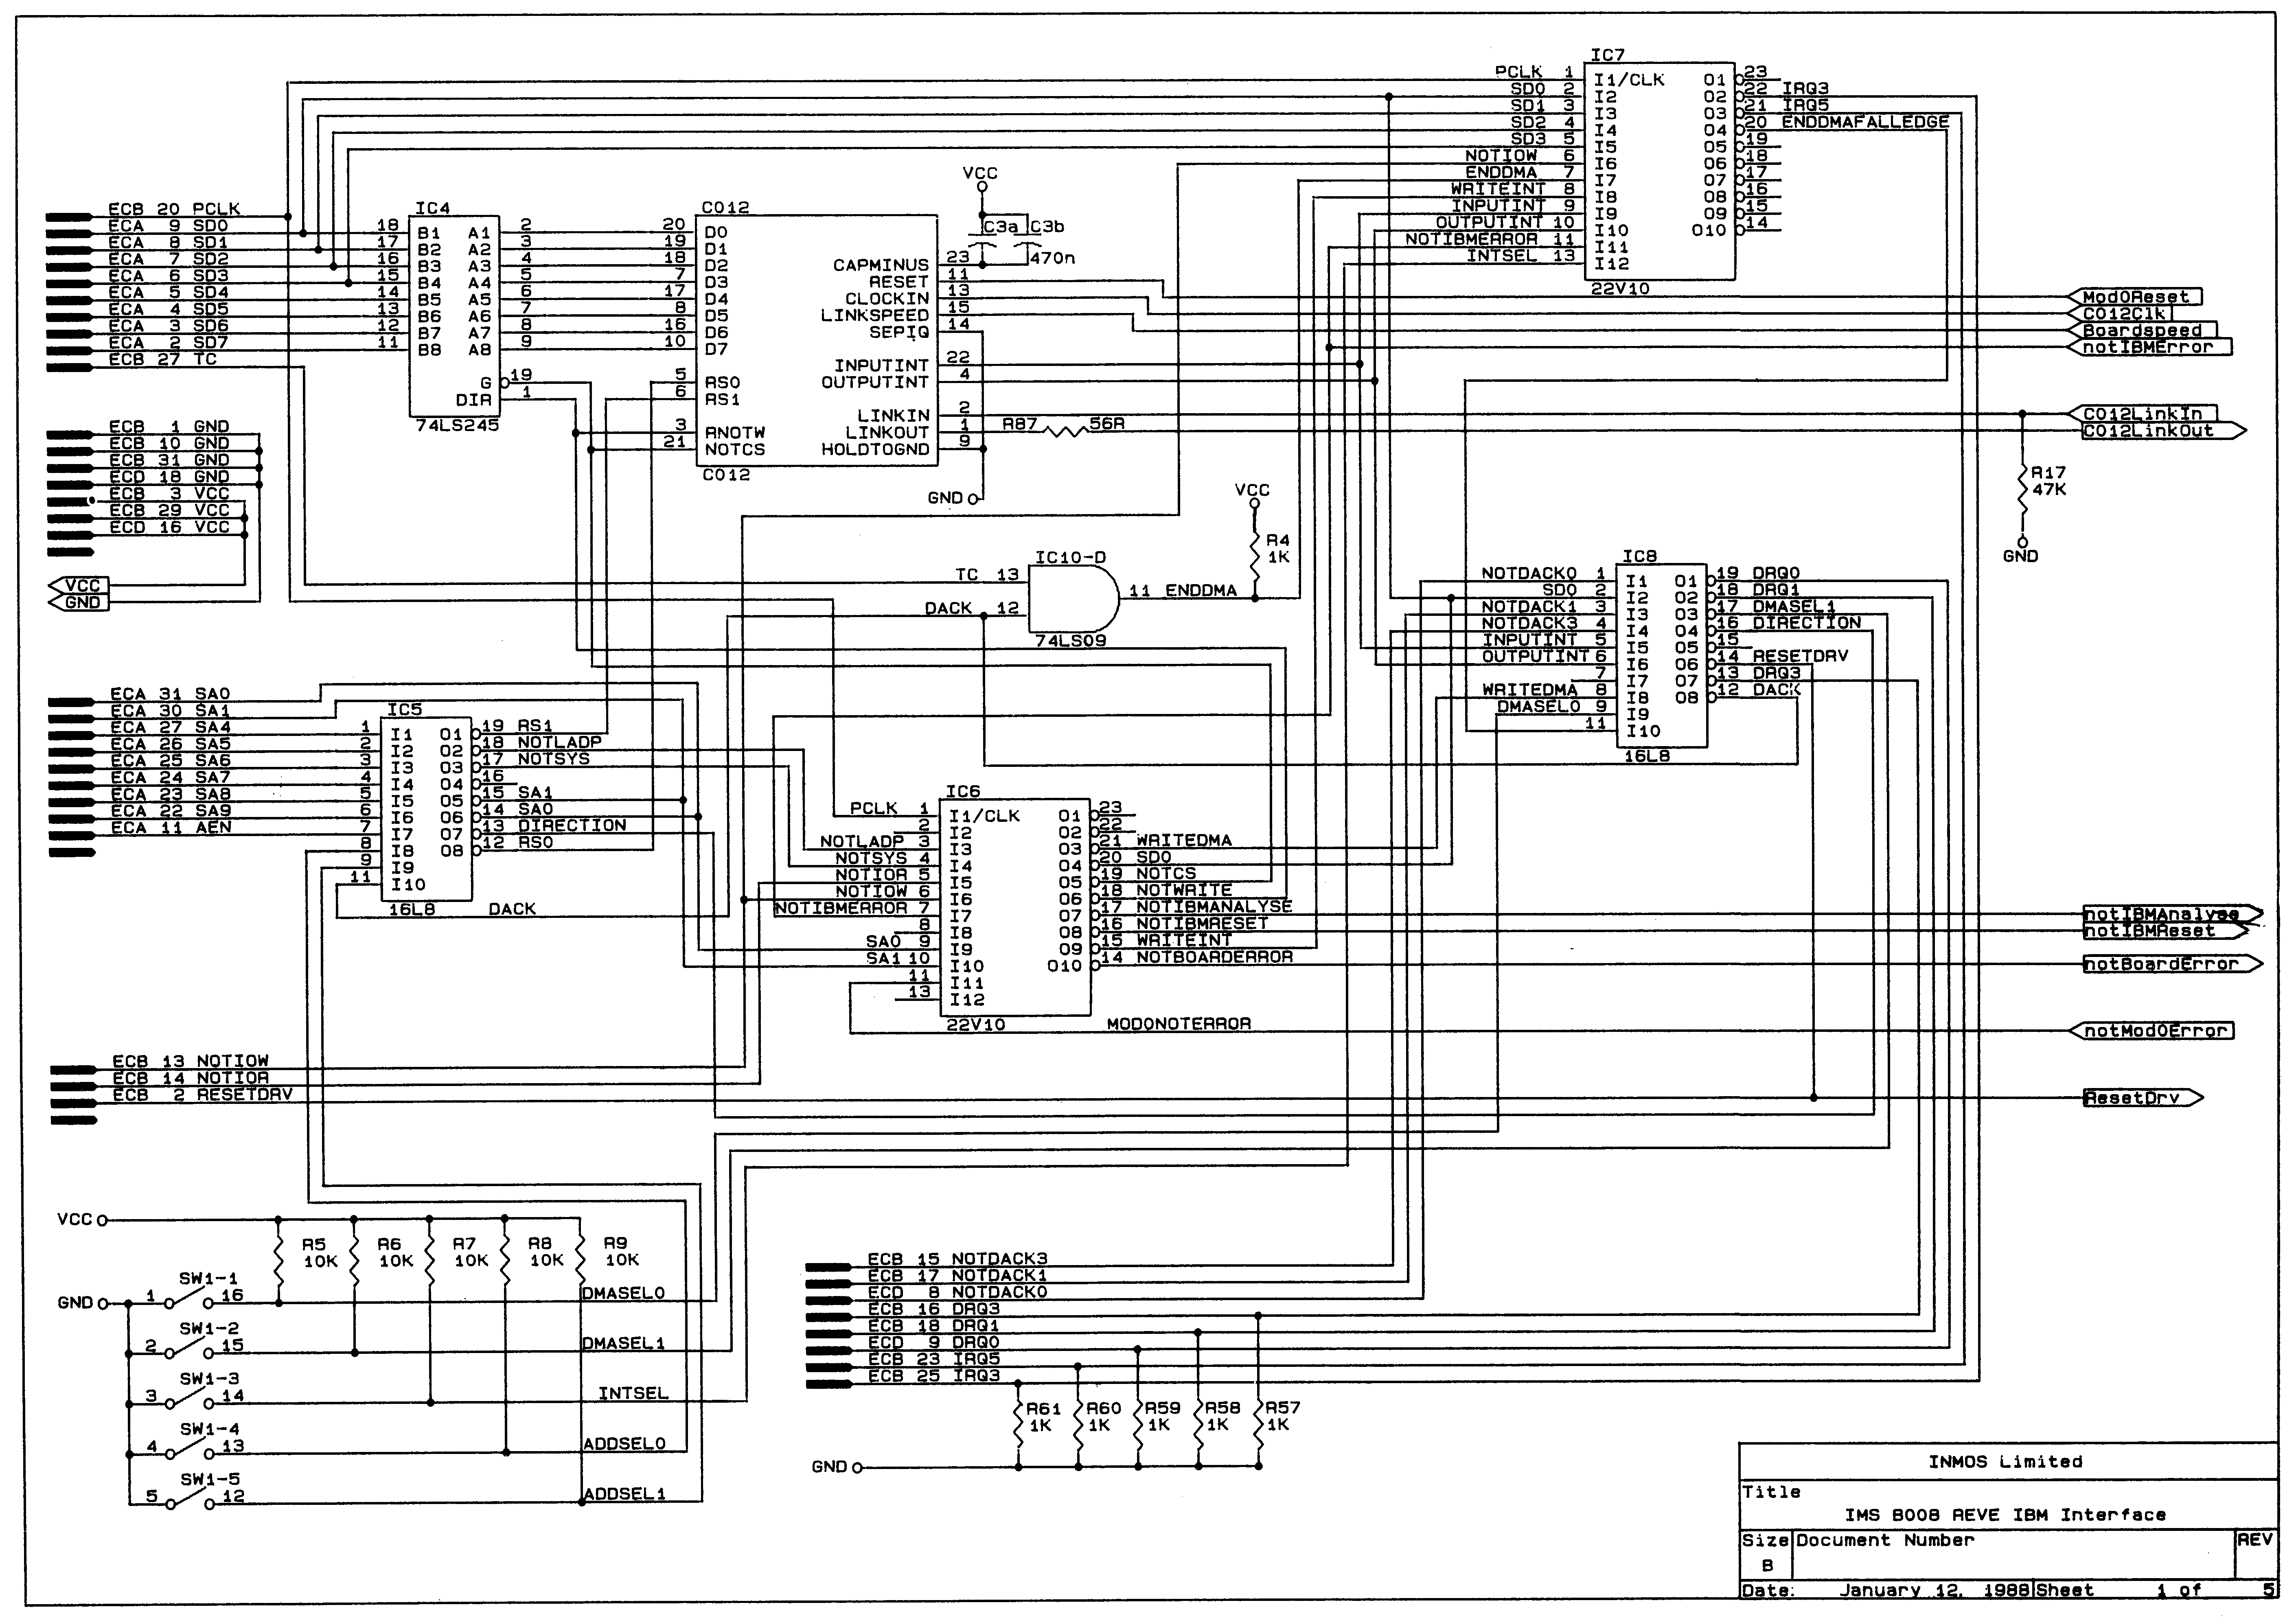 Circuit Diagram 1 of 5